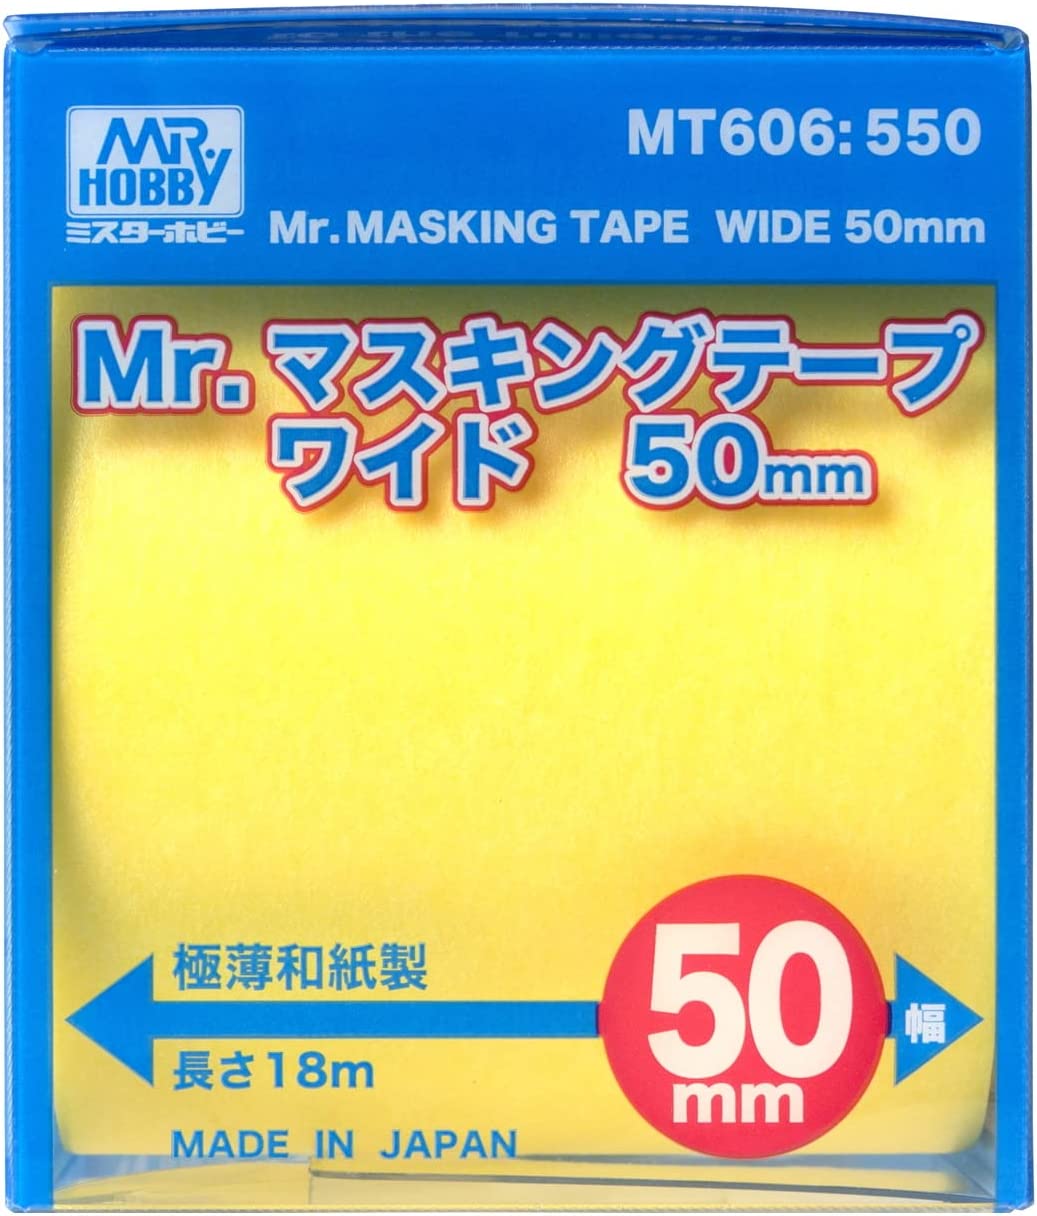 MT606 Mr. Masking Tape Wide 50mm